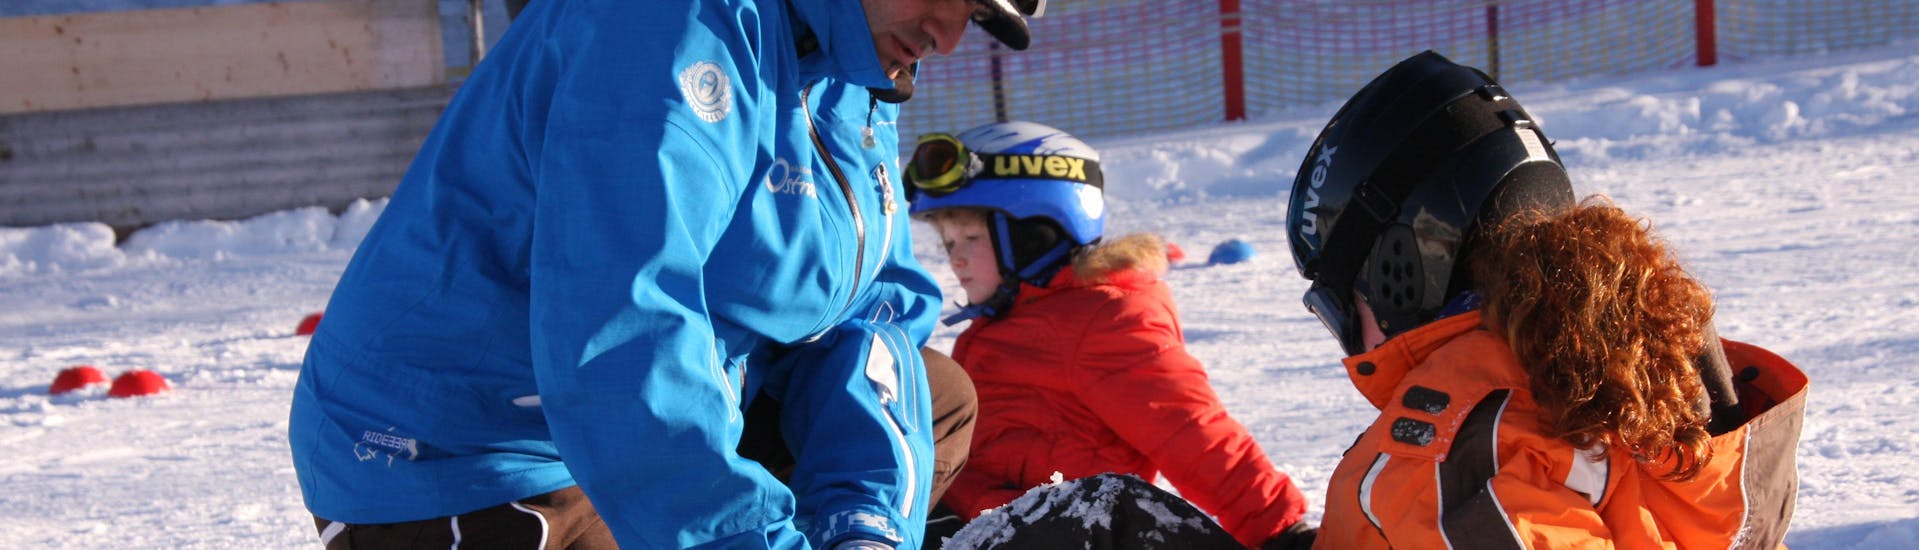 Un instructor enseña a un niño a ponerse la tabla de snowboard en las clases particulares de snowboard para niños y adultos de todos los niveles de la Ski & Snowboard School Ostrachtal.